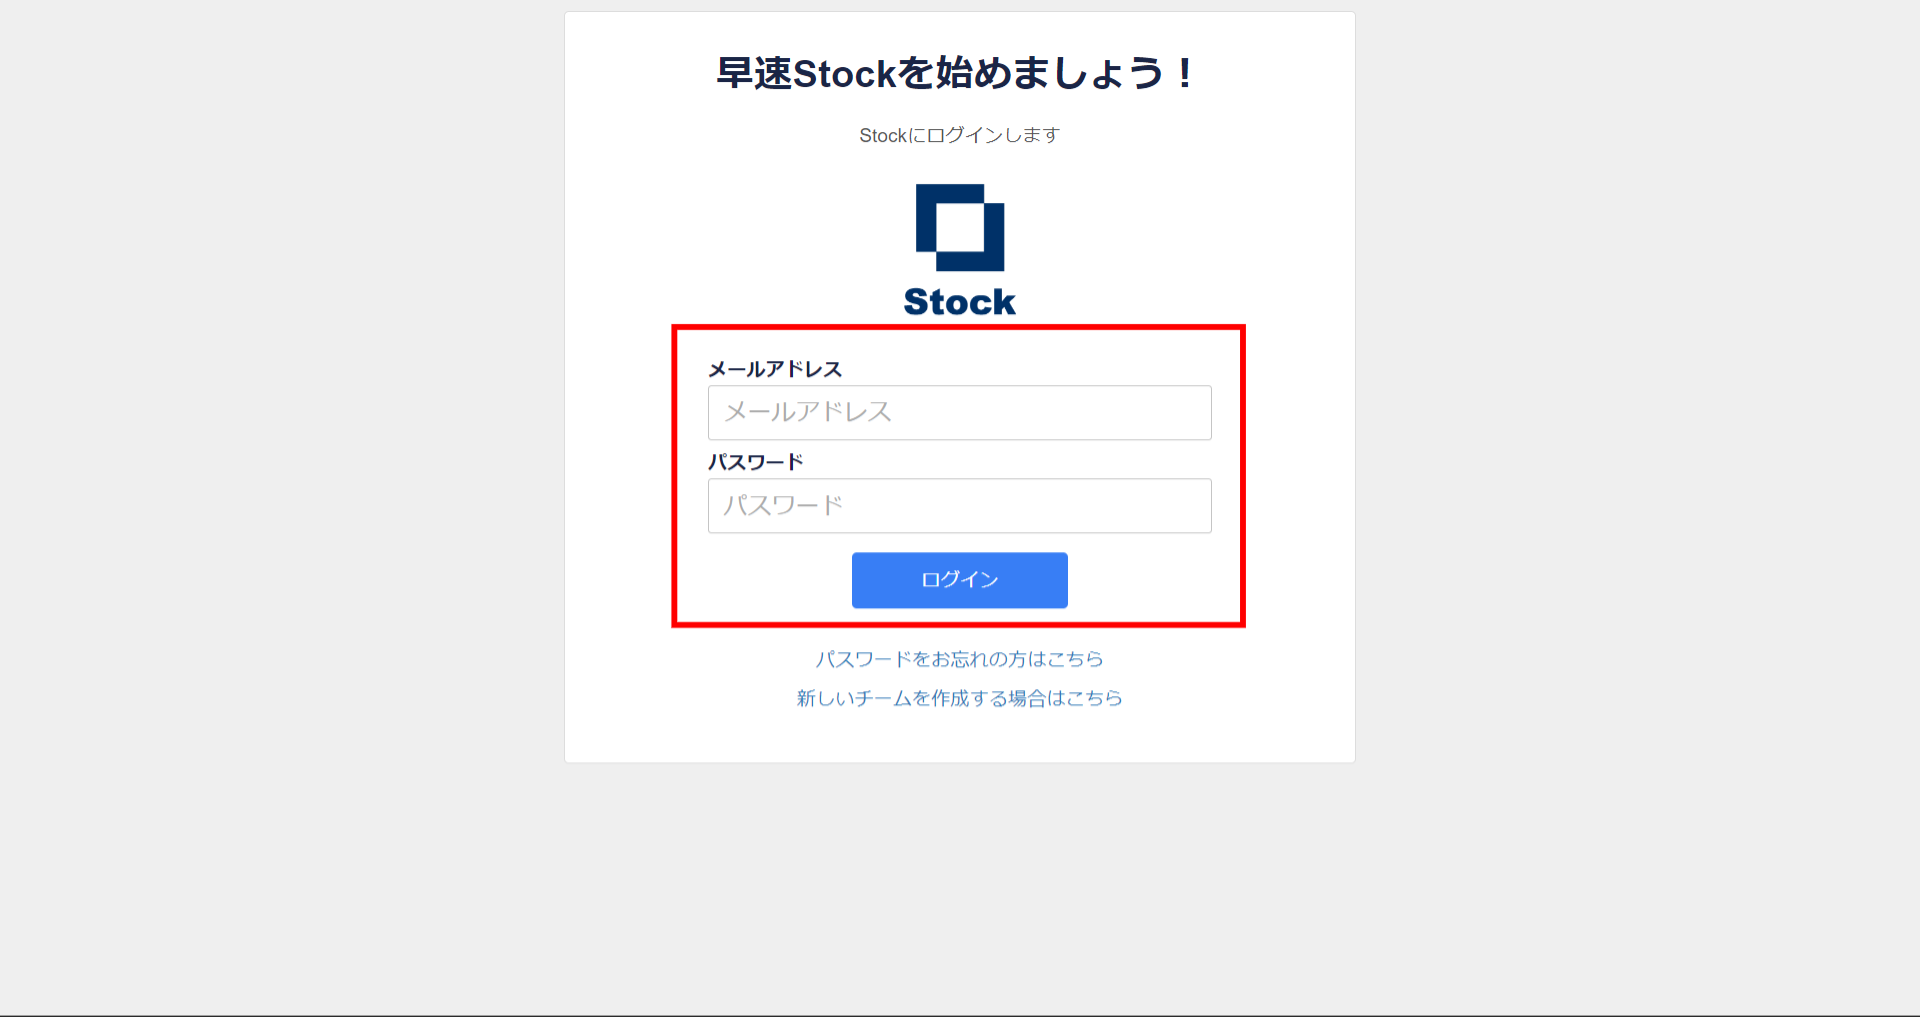 Stock（ストック）での2段階認証でログインする方法_1